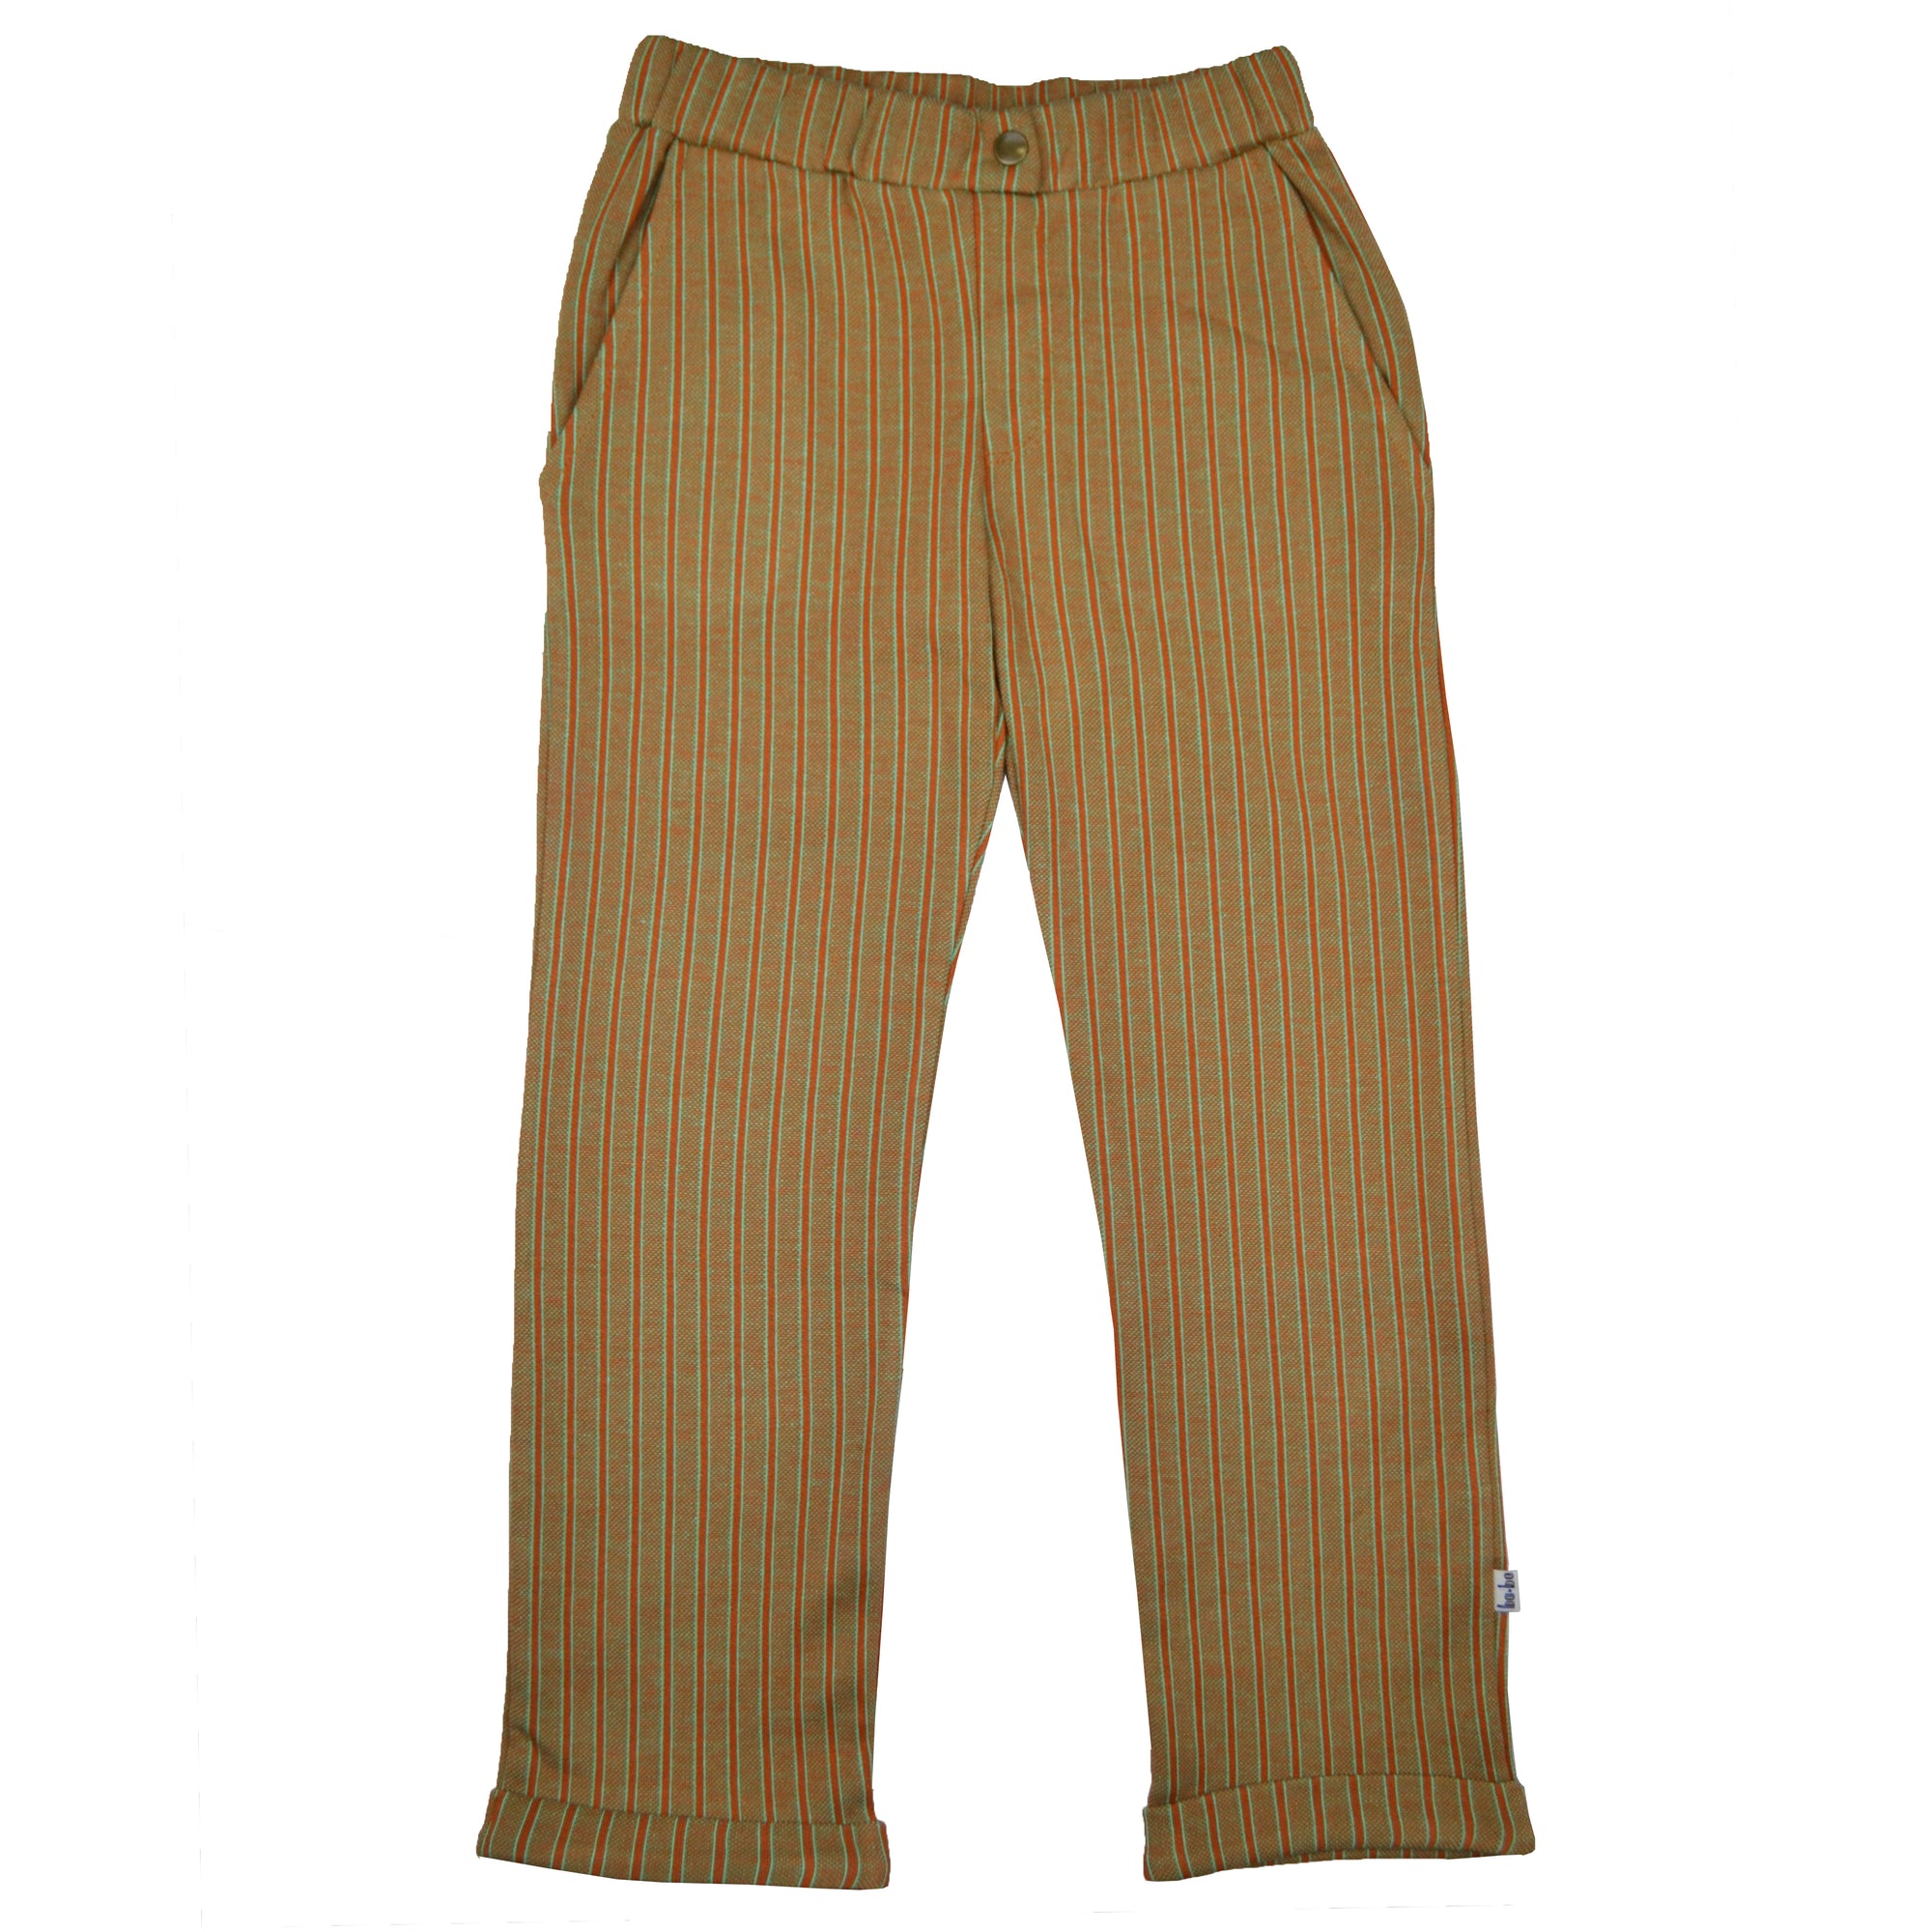 Baba Kidswear - Boys Pants Thin Stripes